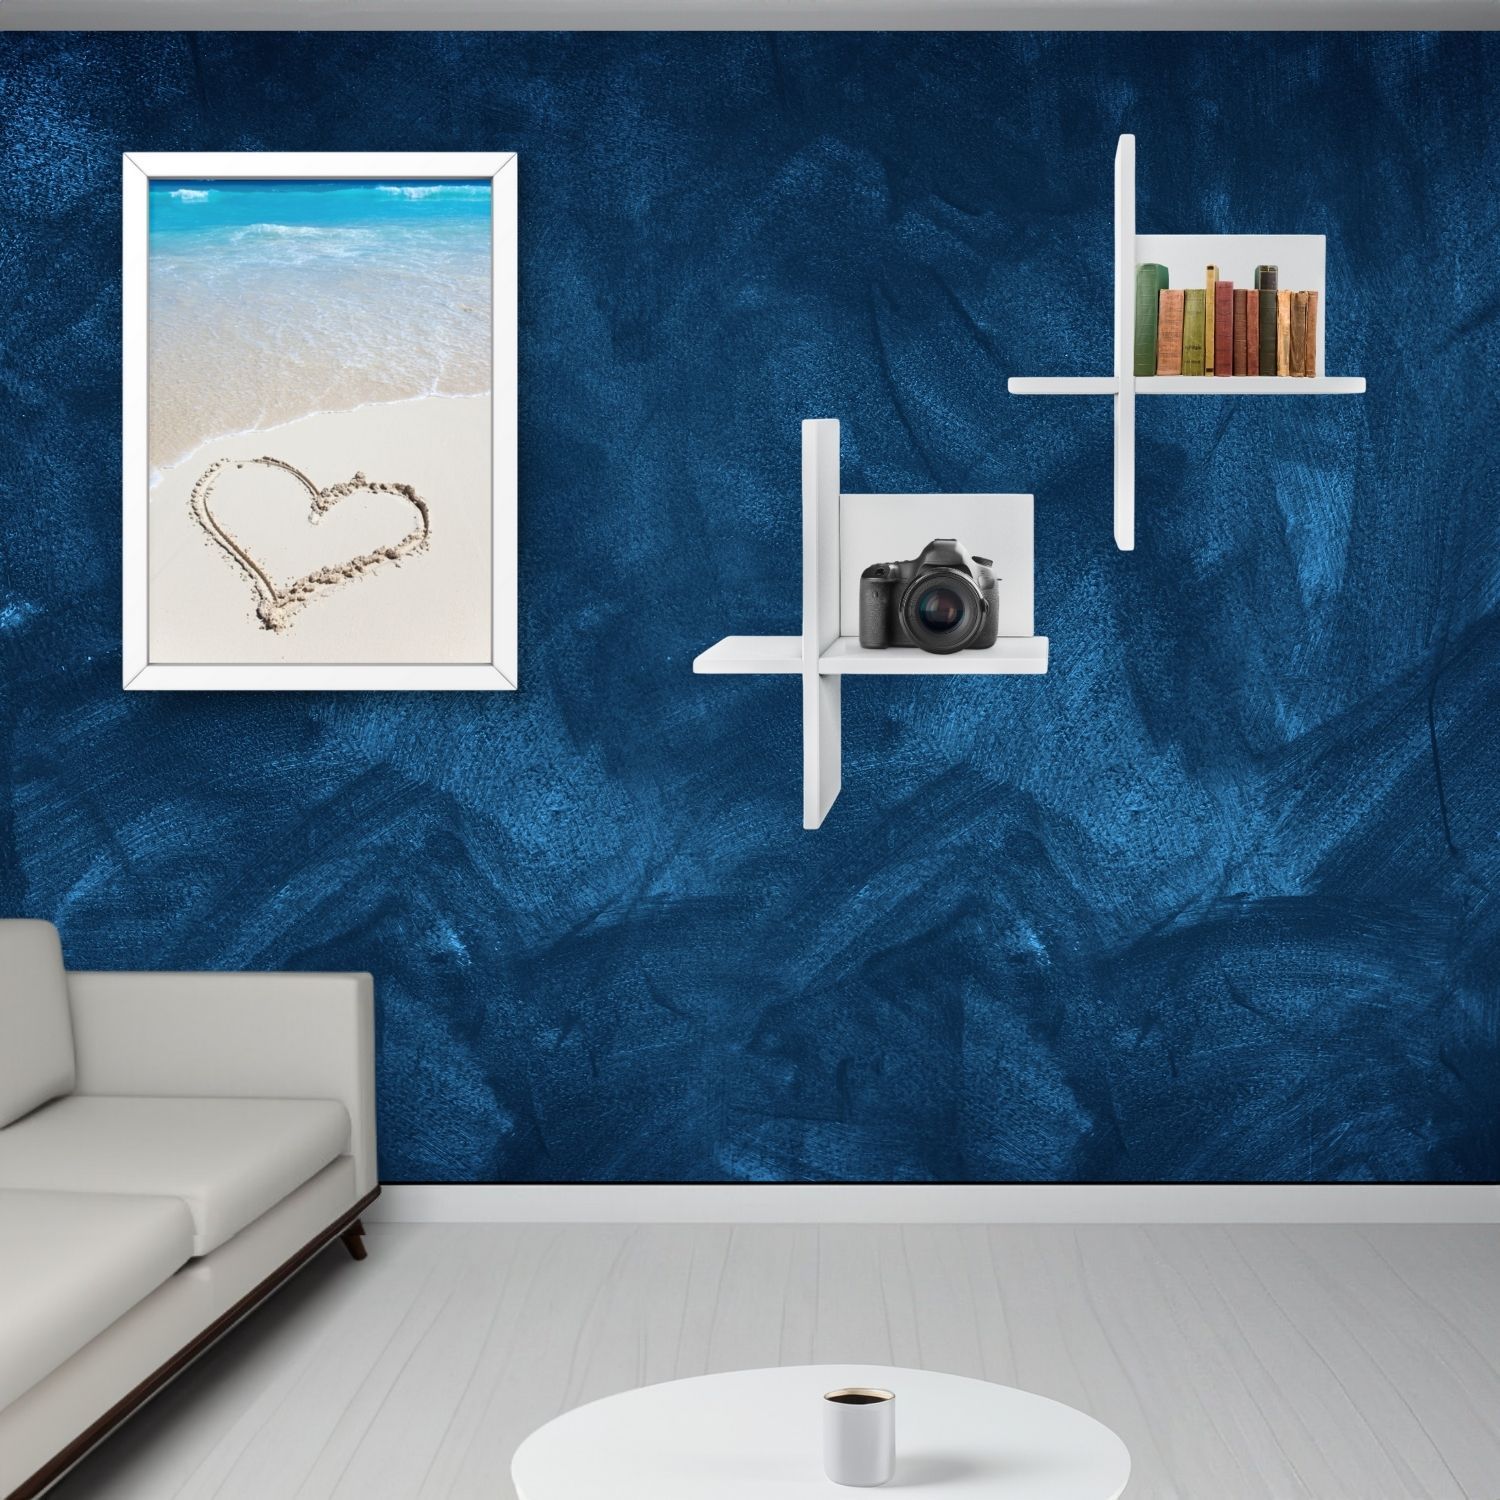 Wandregal Brick Weiß hängend an einer blauen Wand im Wohnzimmer. Links daneben hängt ein Wandbild. Links unten sieht man ein Stück helles Sofa. Ein Couchtisch mit Tasse Kaffee.